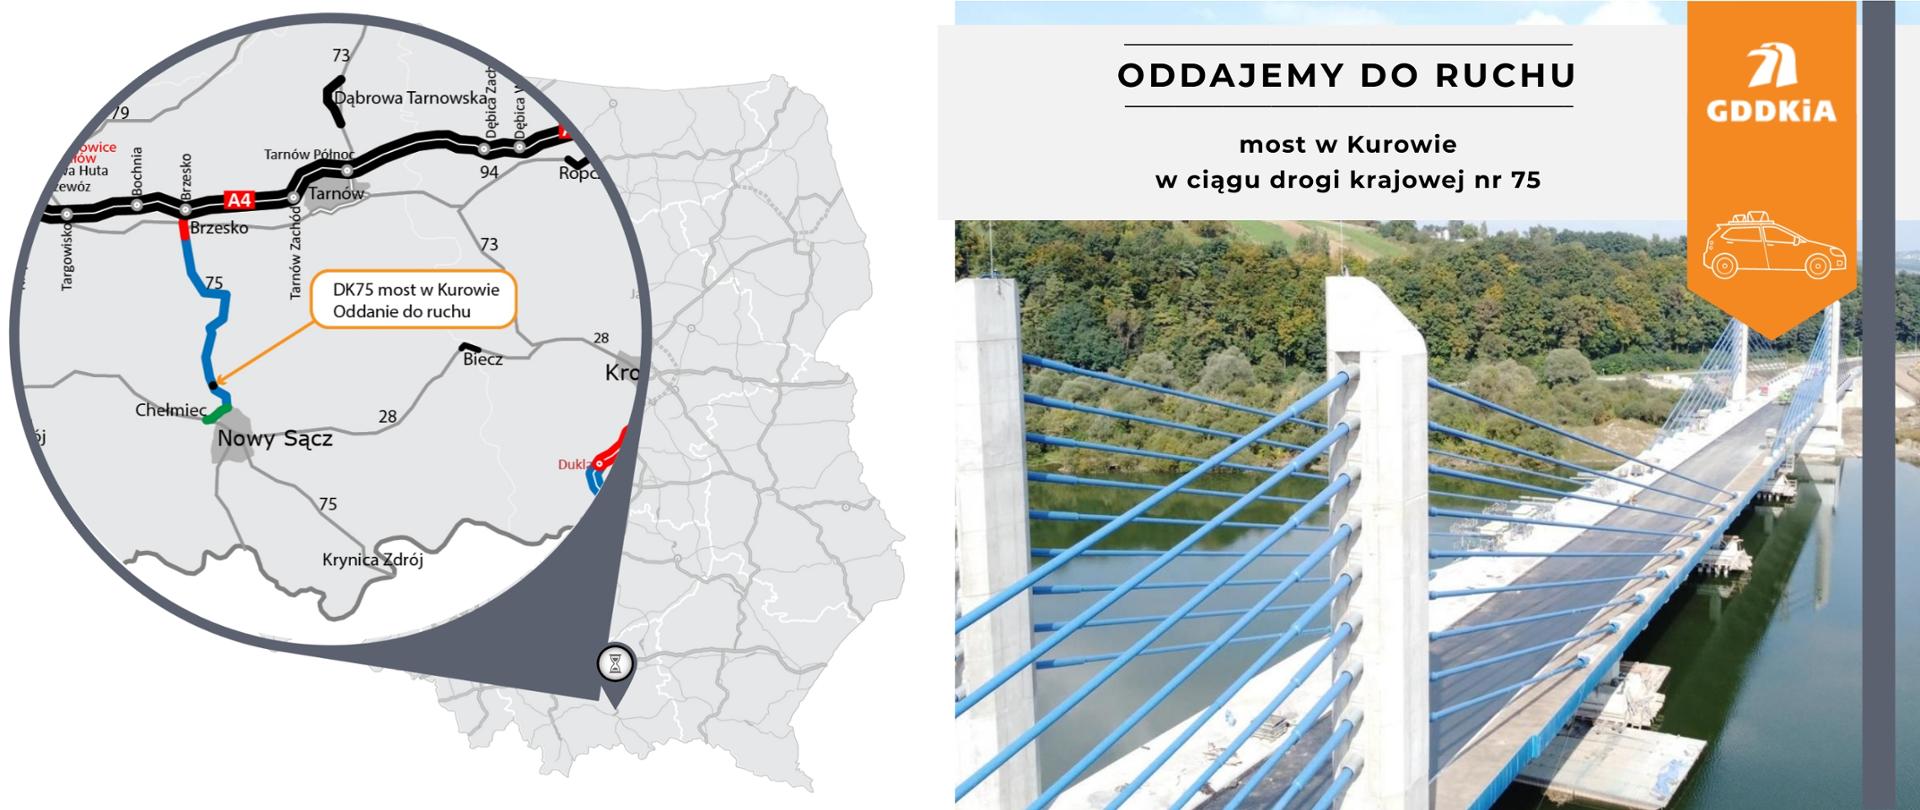 mapa z zaznaczeniem mostu w Kurowie oraz zdjęcie mostu